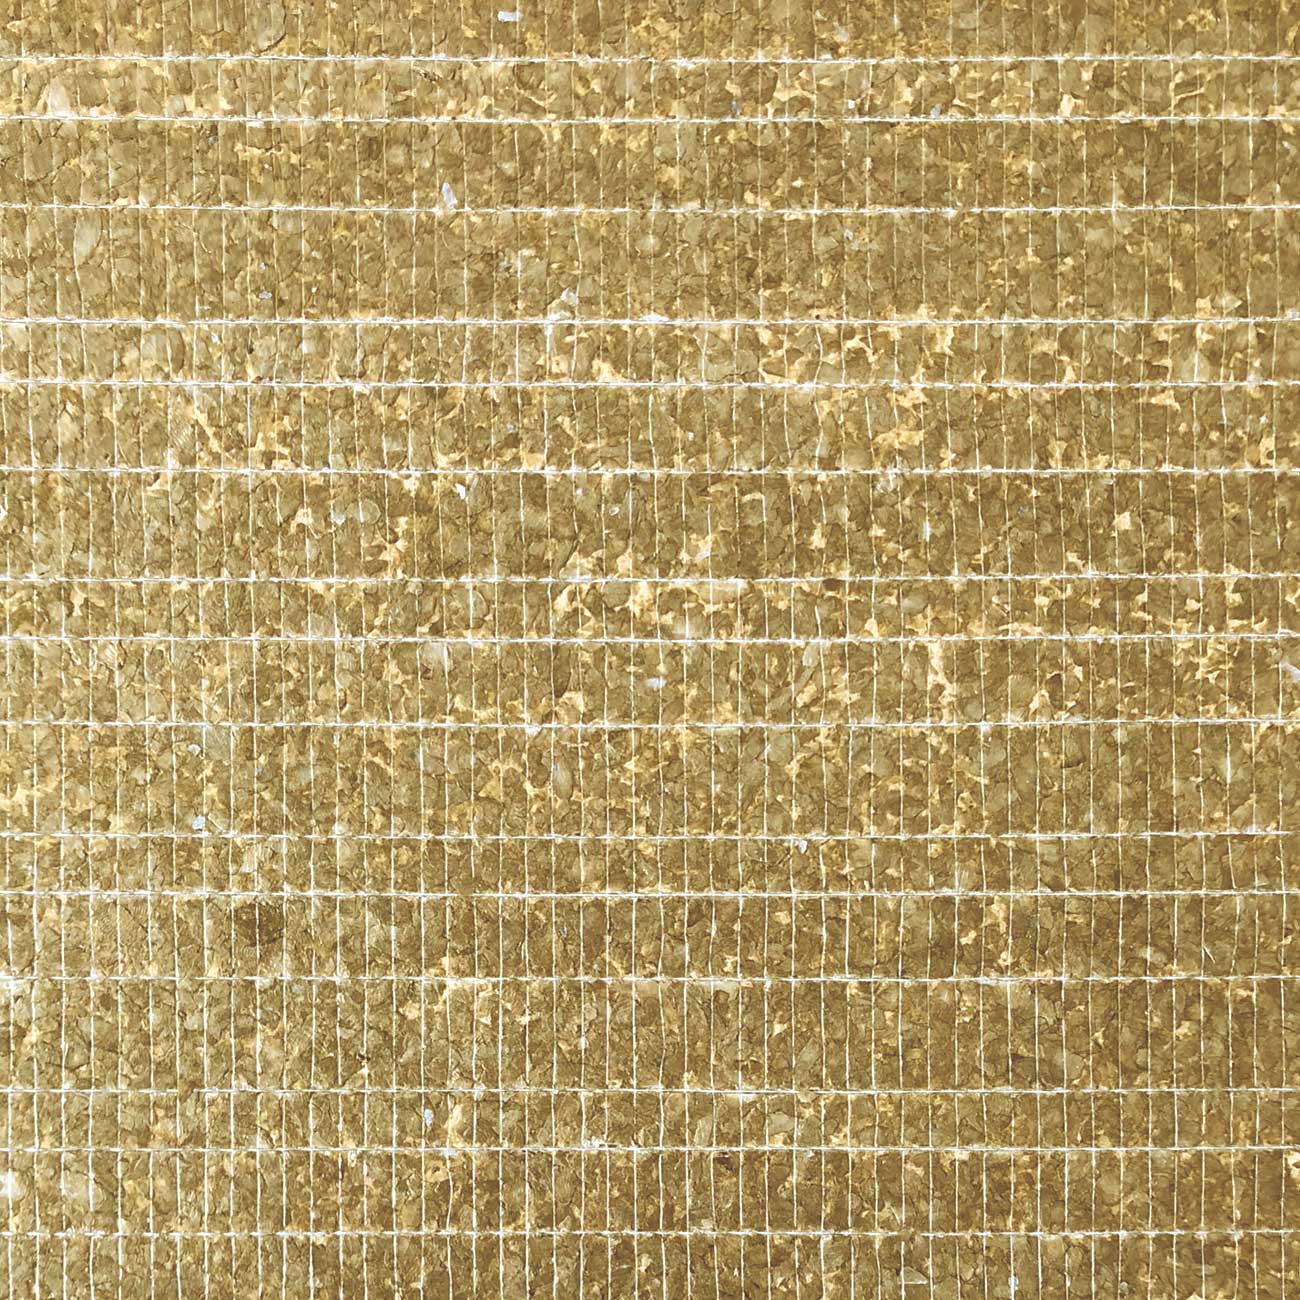 Muschel-Wandverkleidung WallFace CSA07 CAPIZ handgefertigte Vliestapete mit echten Capiz-Muscheln perlmuttgoldbrauner Optik 2,45 m2